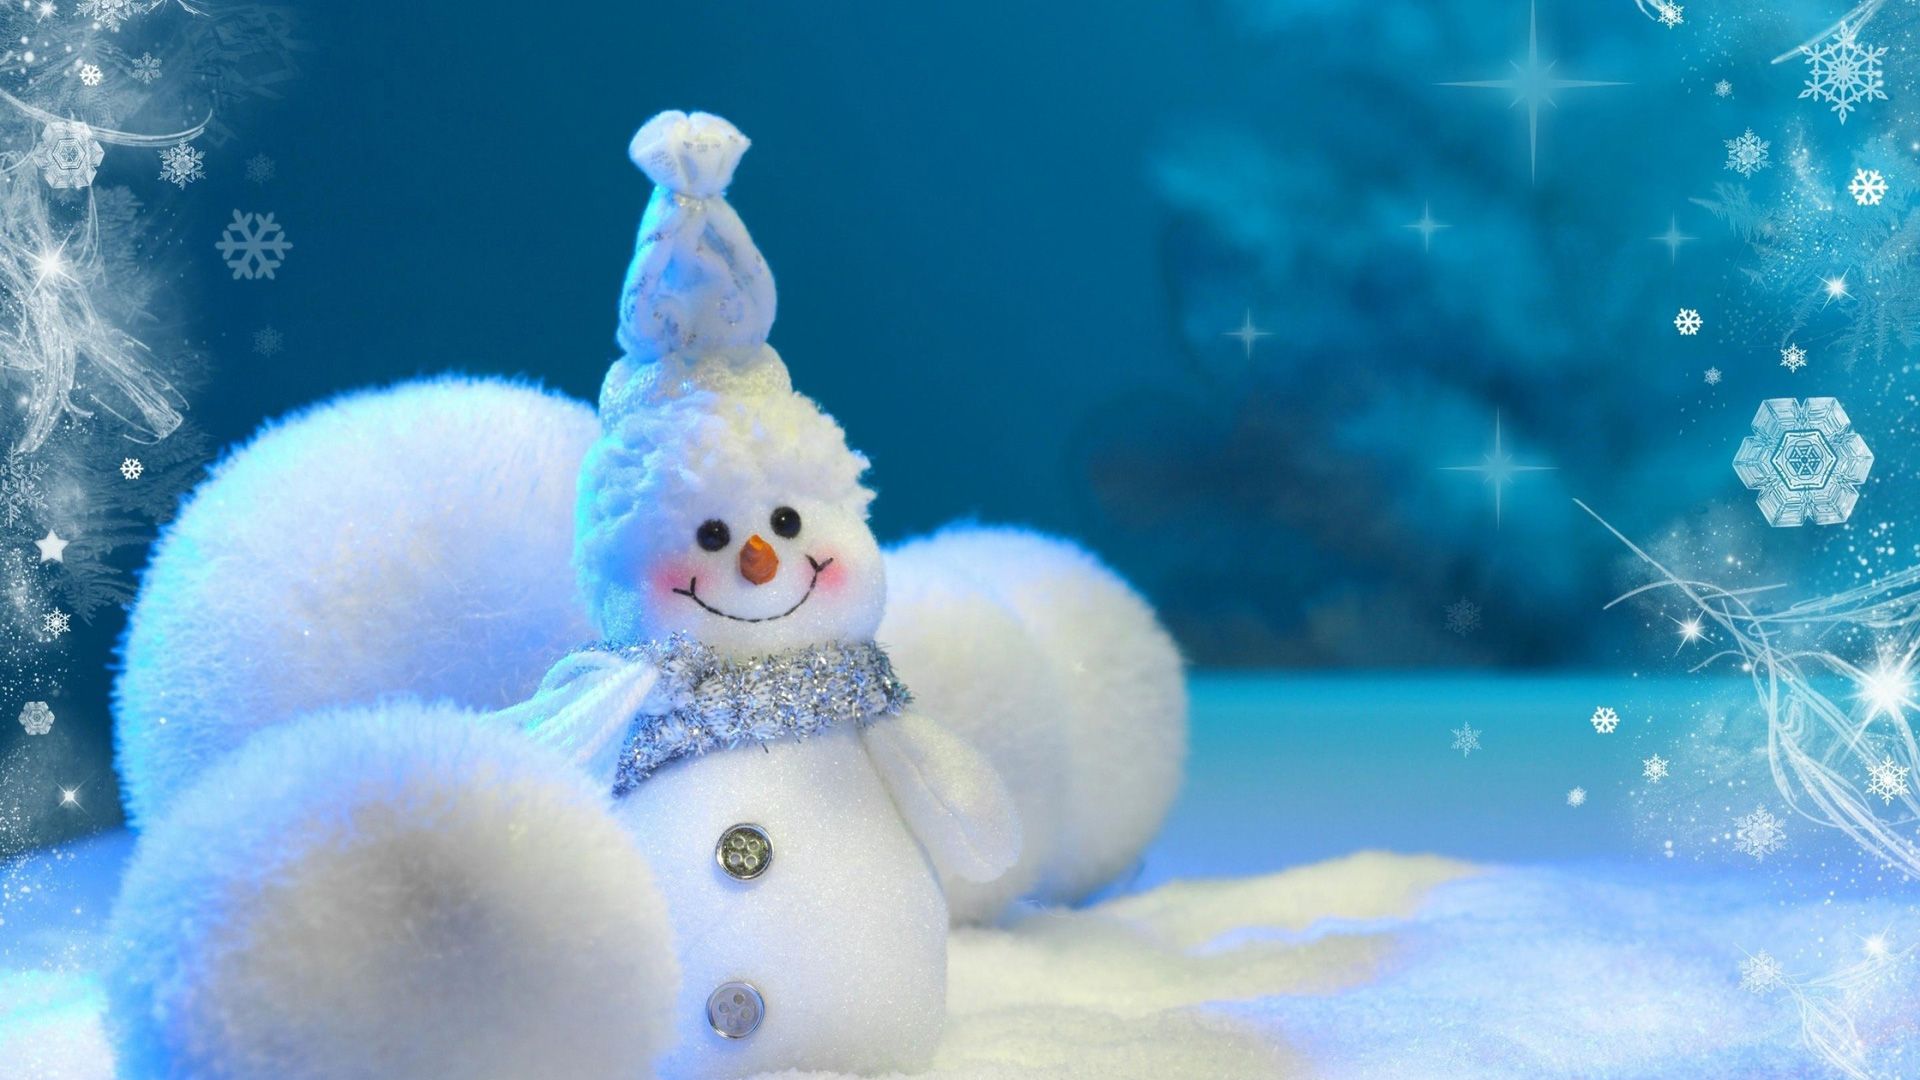 Download Wallpaper, Cute Snowman high definition wallpaper, 1080p ...